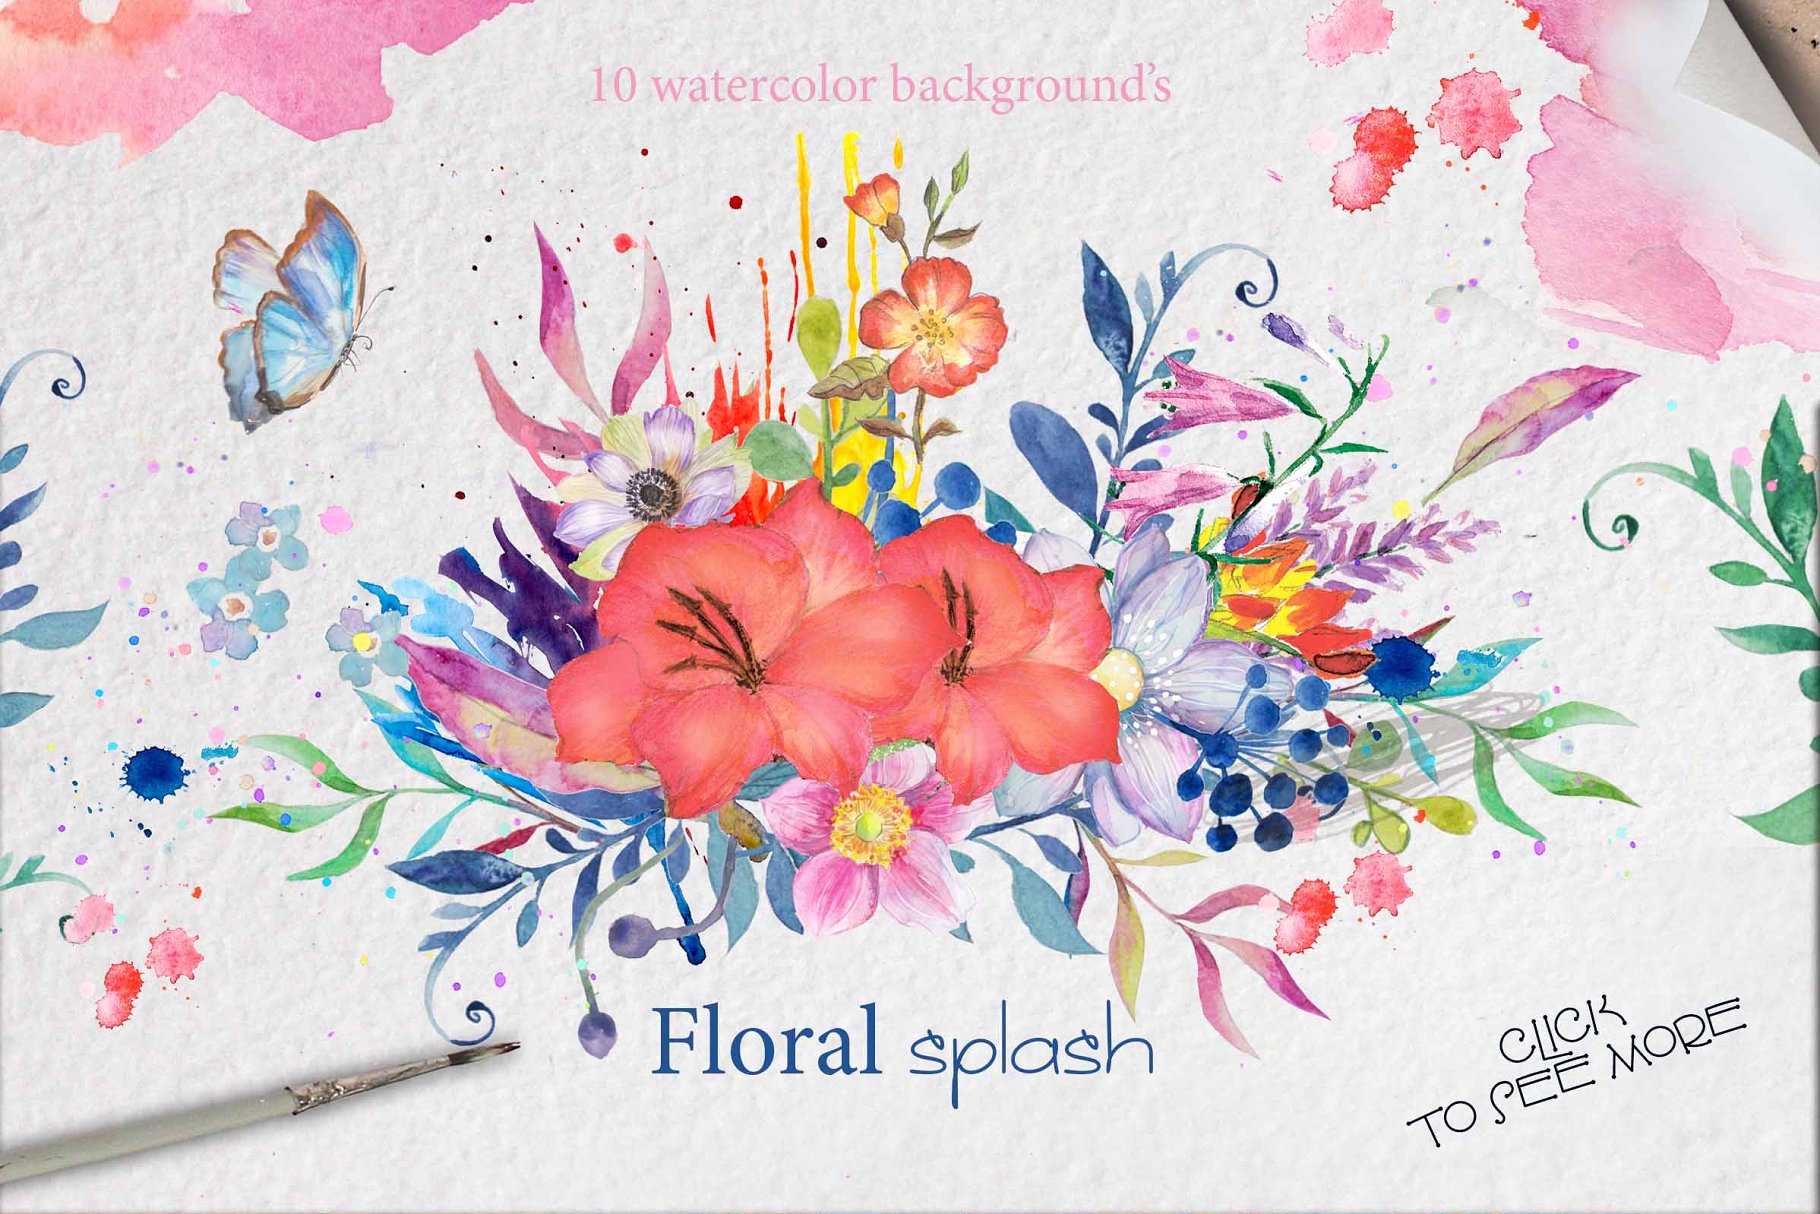 高质量水彩花卉素材合集 watercolor flowers box插图(2)